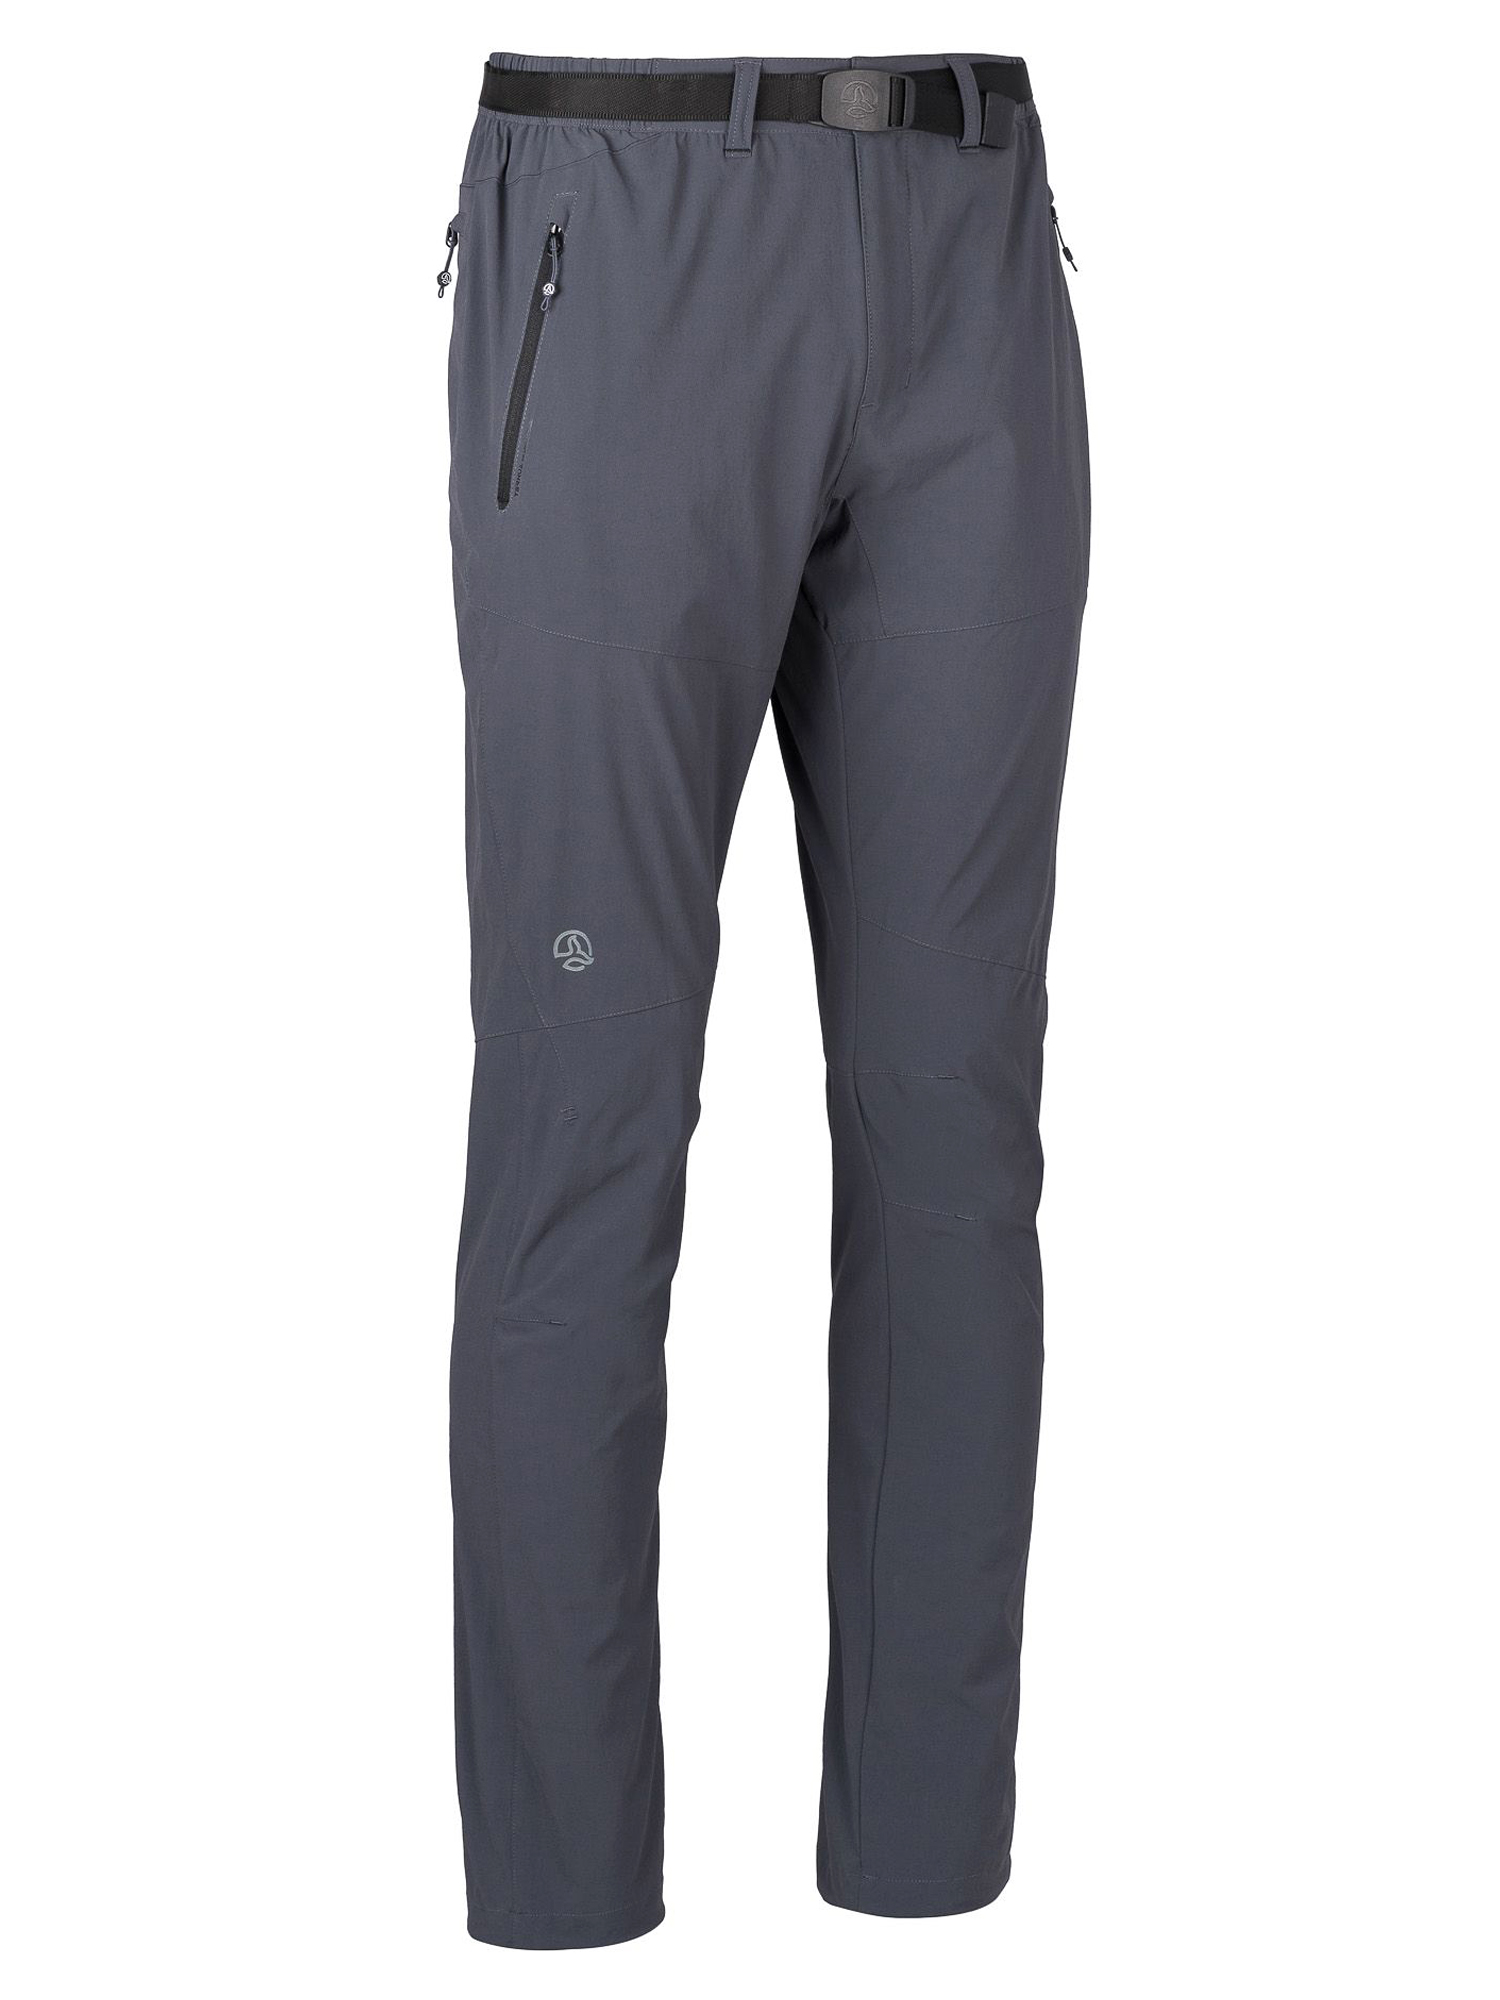 Спортивные брюки мужские Ternua Friz Pt M серые 2XL